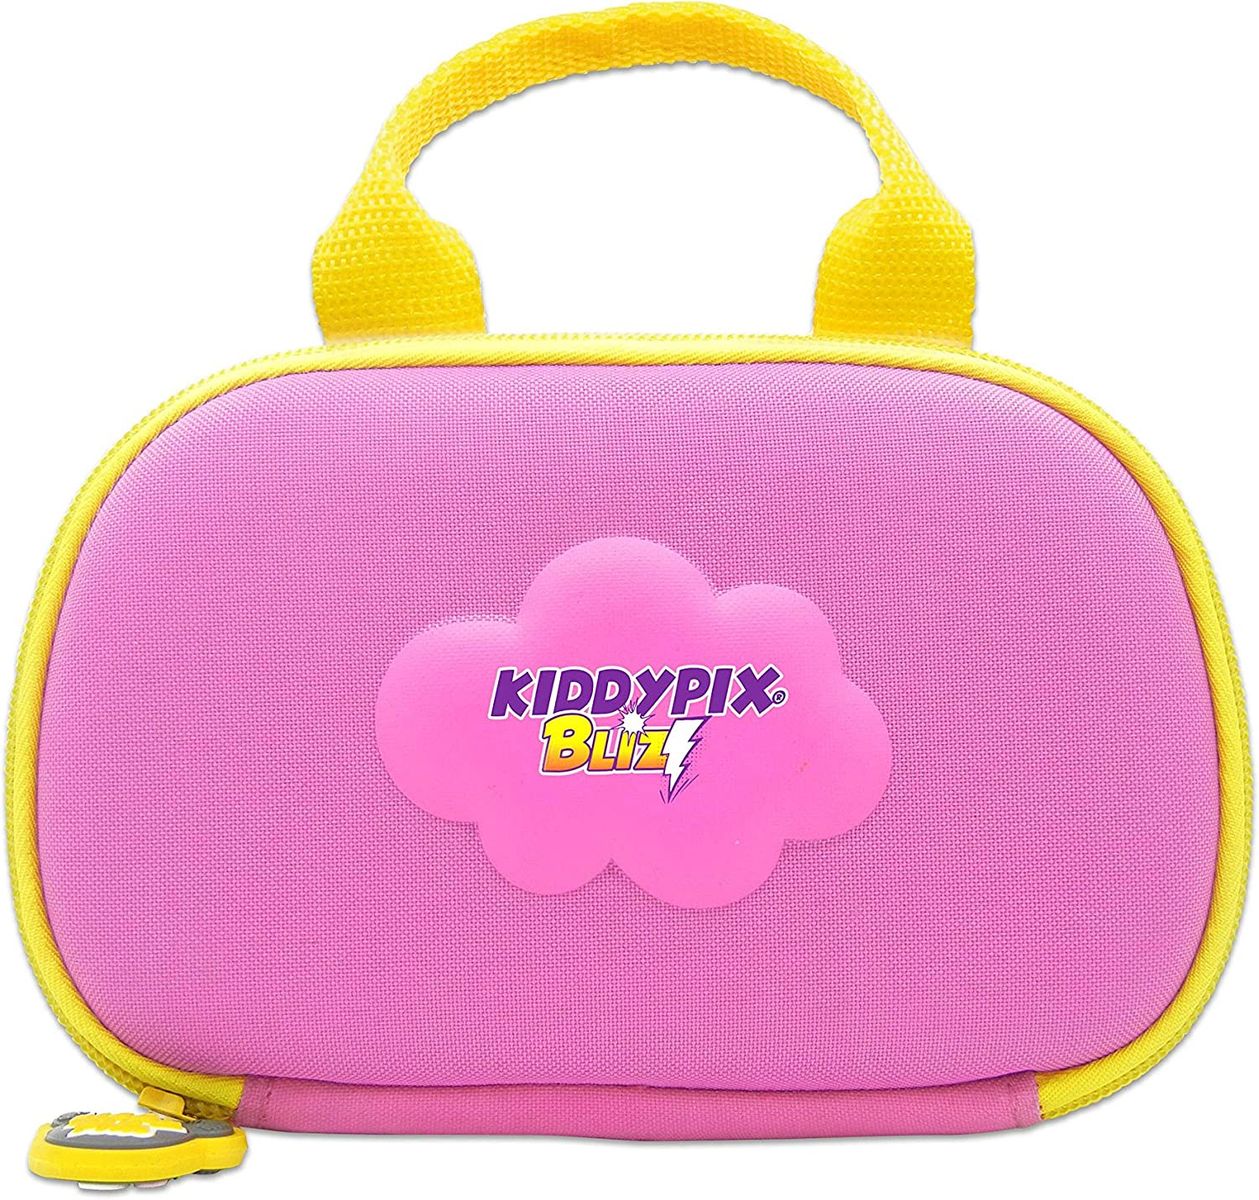 Kiddypix Blizz Kinderkamera mit Webcam-Funktion, gummierte Außenseite, Integrierte Spiele, Pink